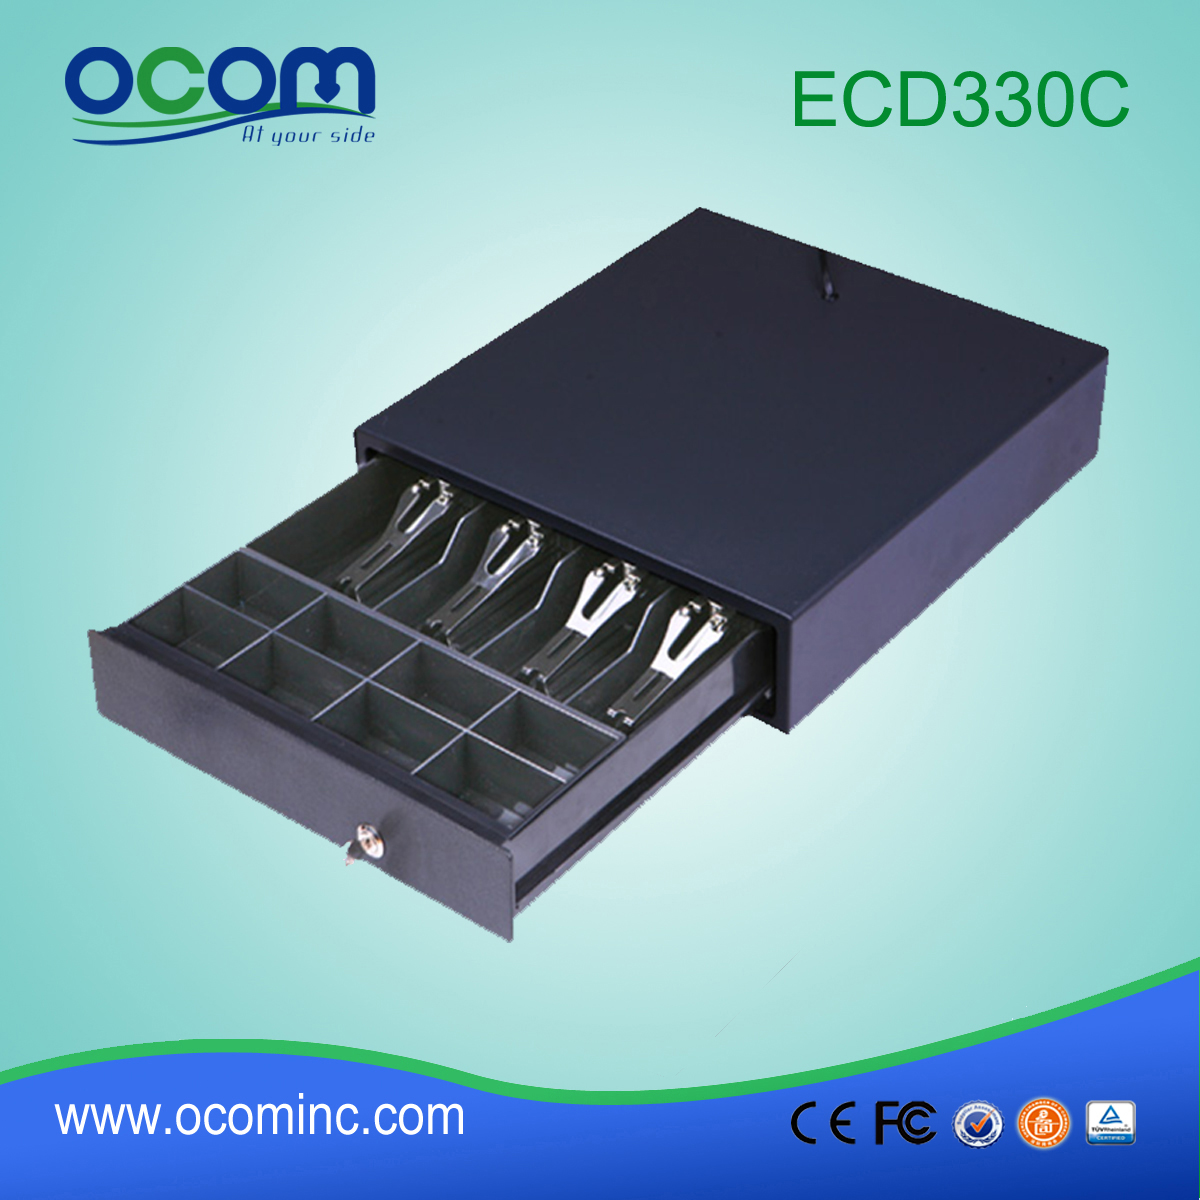 (ECD330C) Nuovo cassetto per contanti pos di colore nero